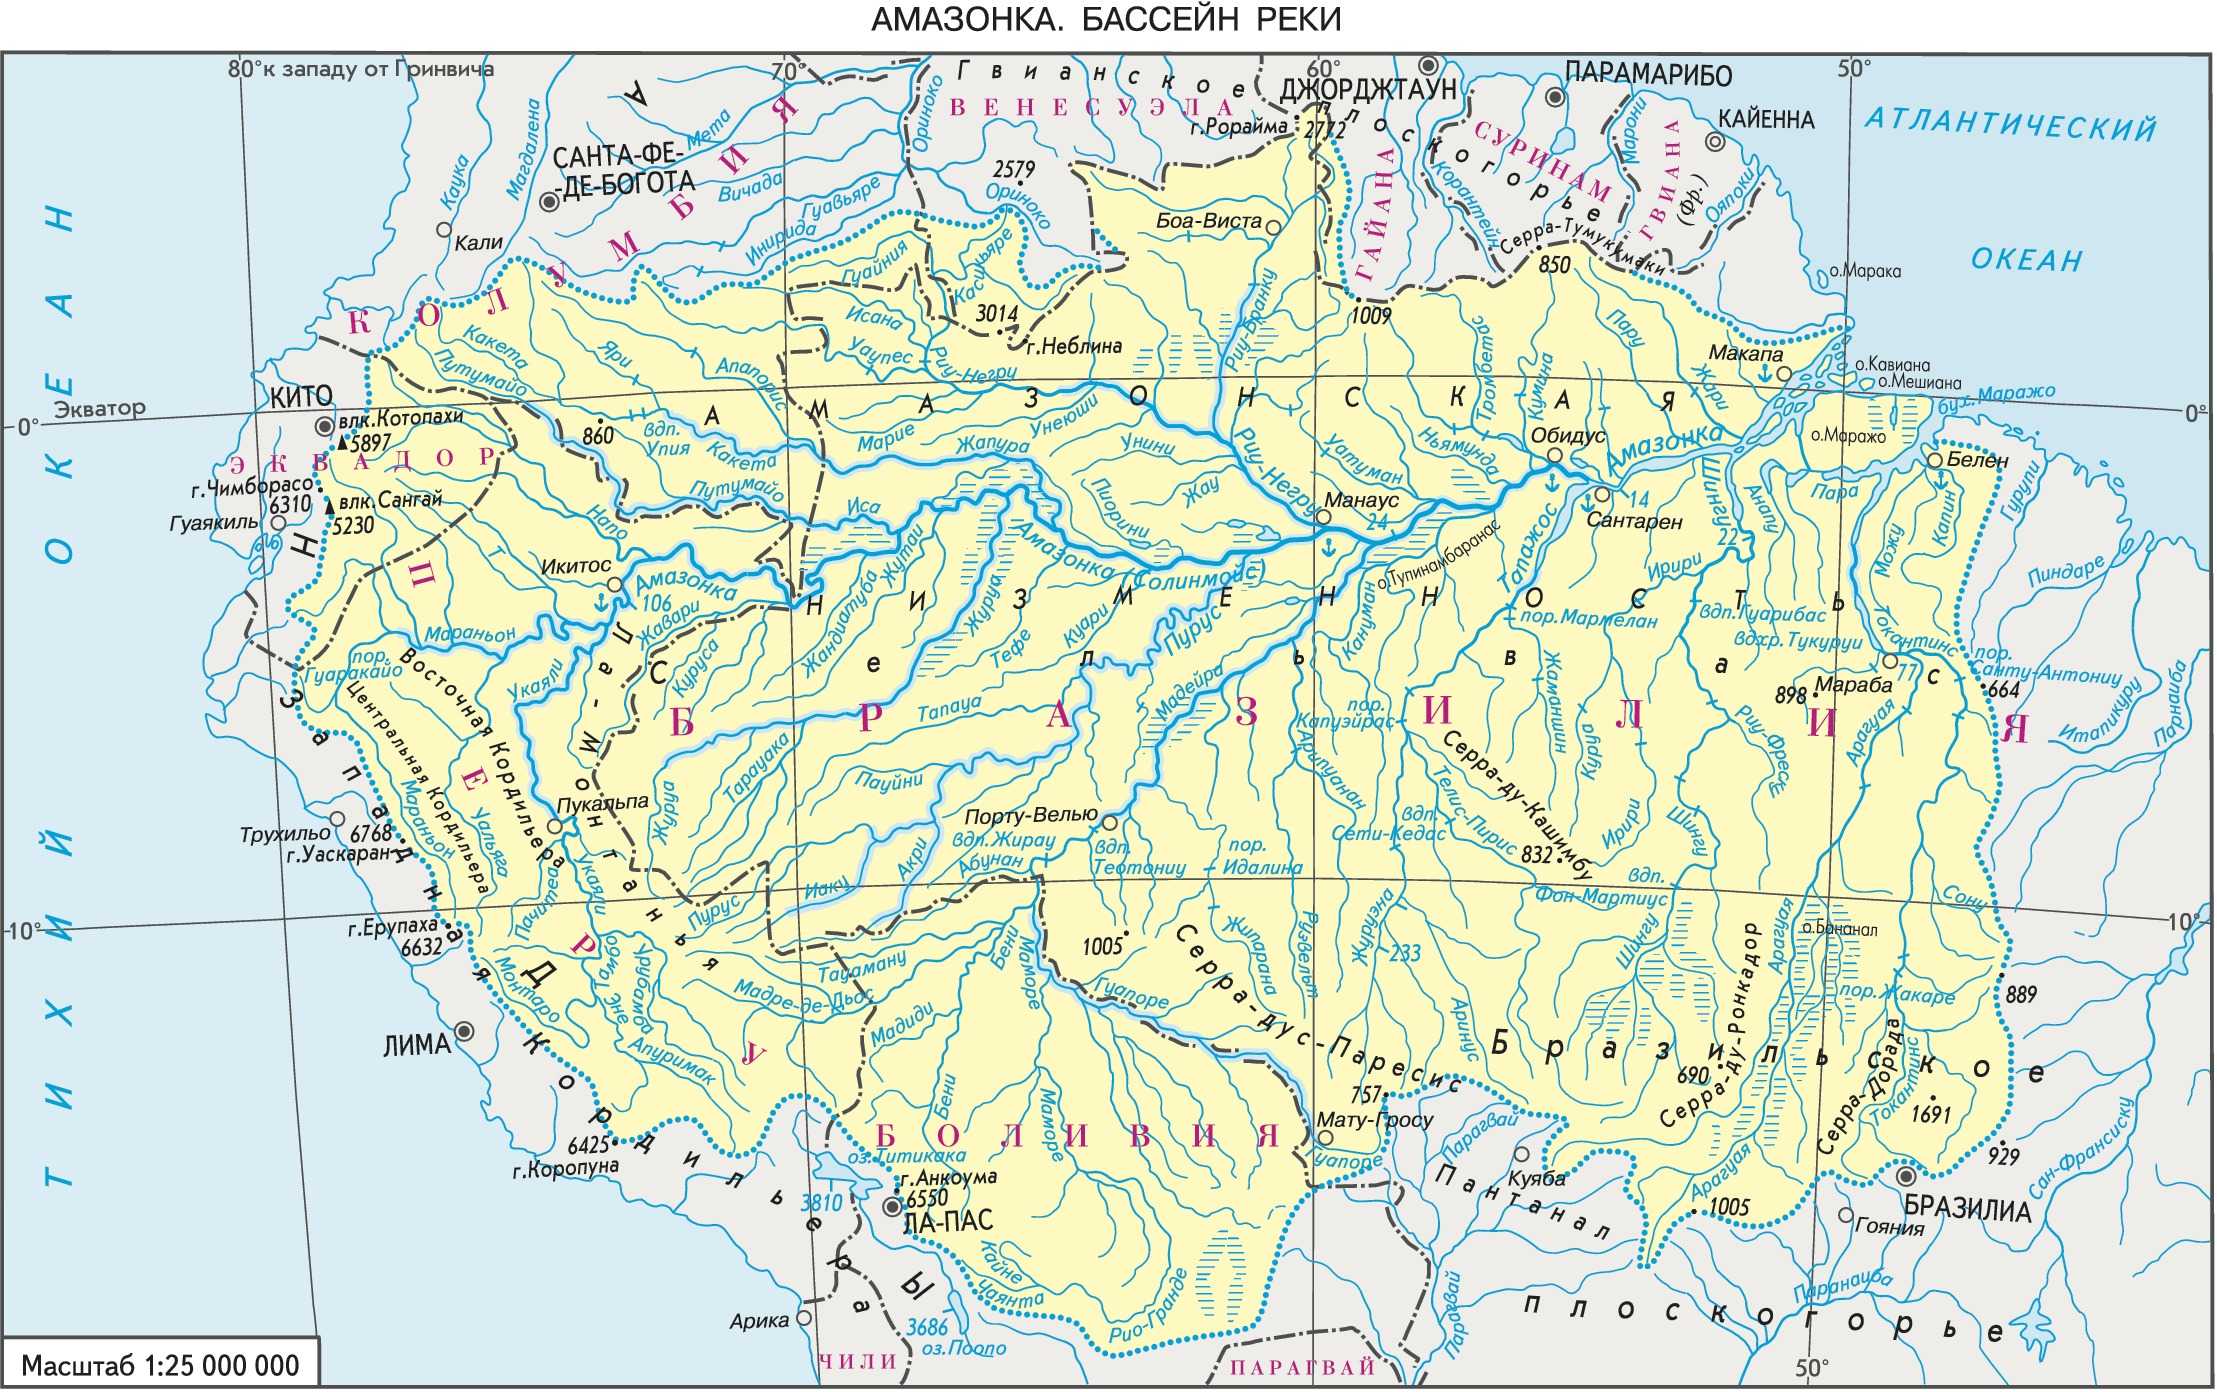 Крупнейшие реки южной америки на контурной карте. Река Амазонка на карте Южной Америки. Бассейн амазонки на карте Южной Америки. Бассейн реки Амазонка на карте. Бассейн реки Амазонка на карте Южной Америки.